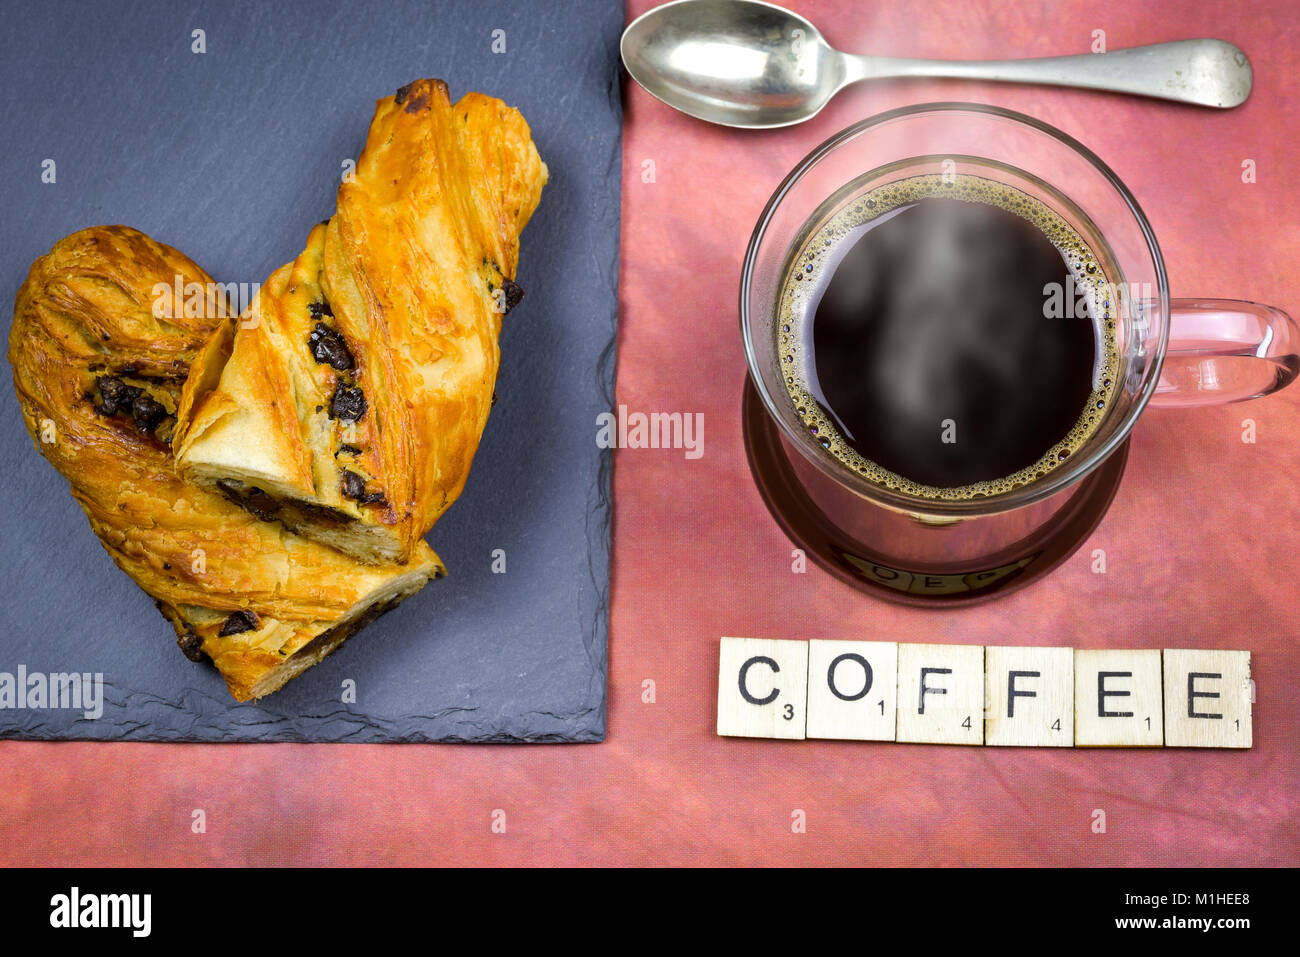 Concetto di caffè e alfabeto lettere in legno con lettere che compongono la parola : Caffè Foto Stock